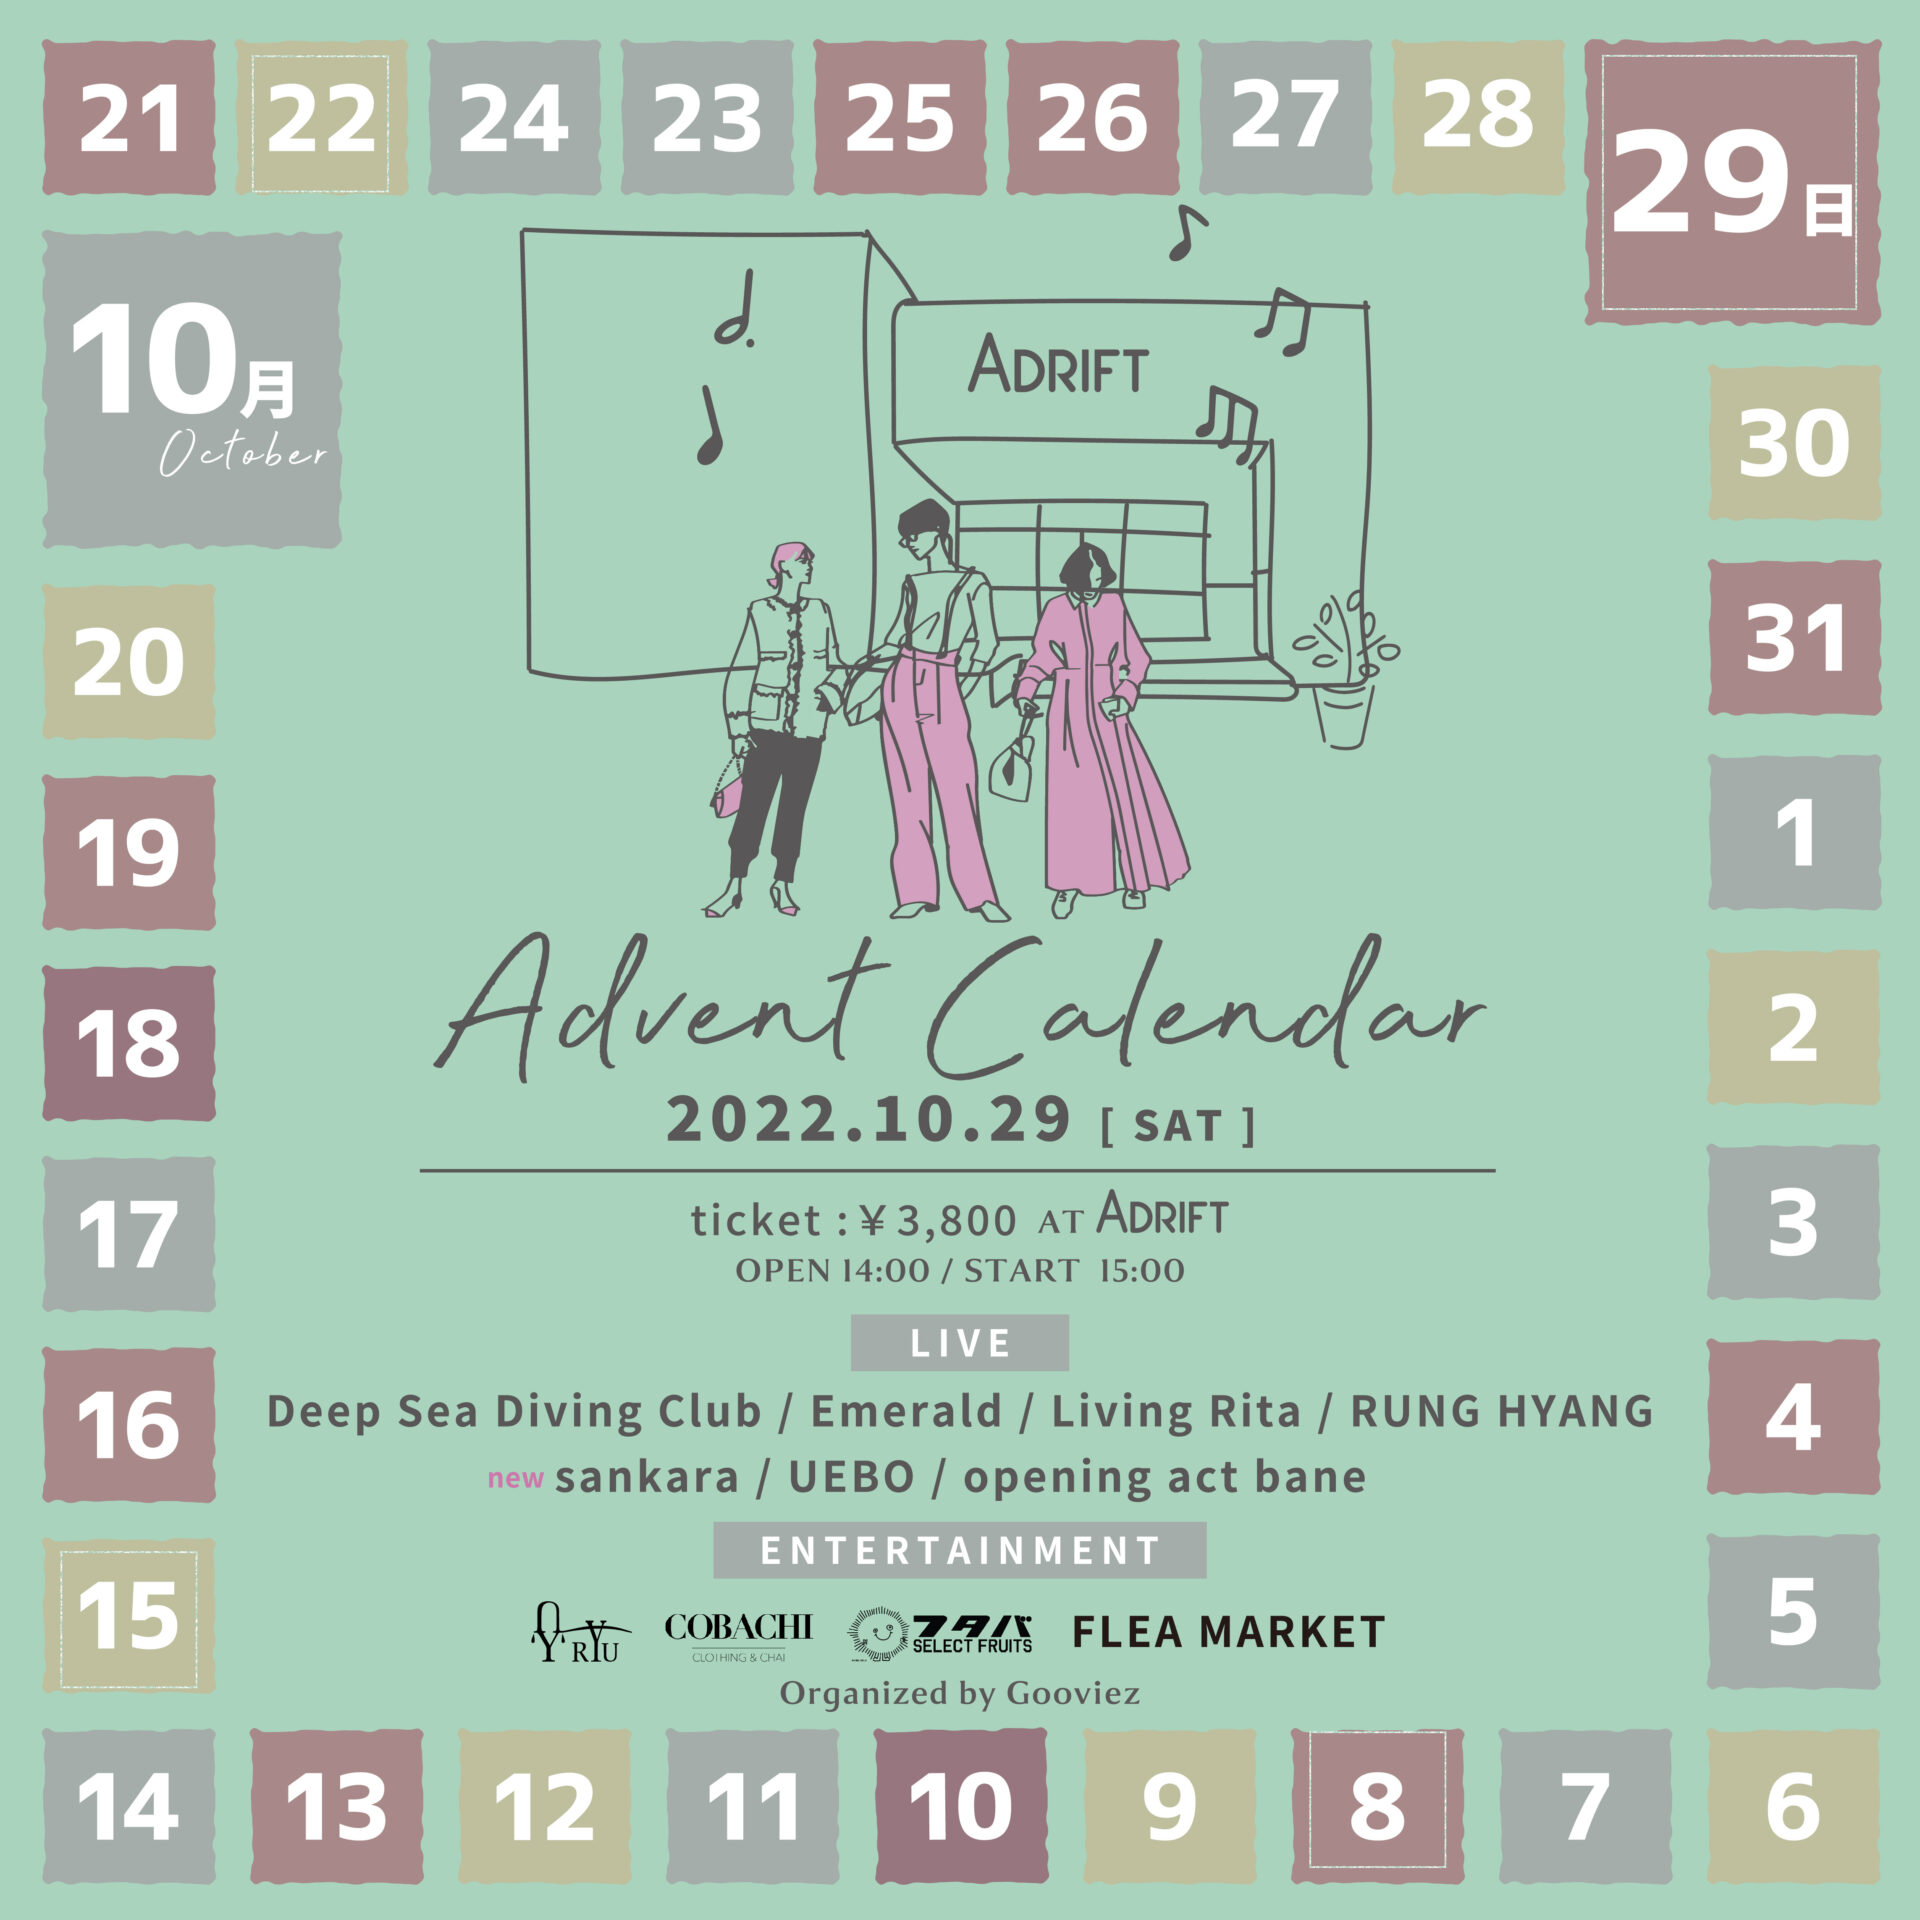 UEBO / Calendar - 邦楽